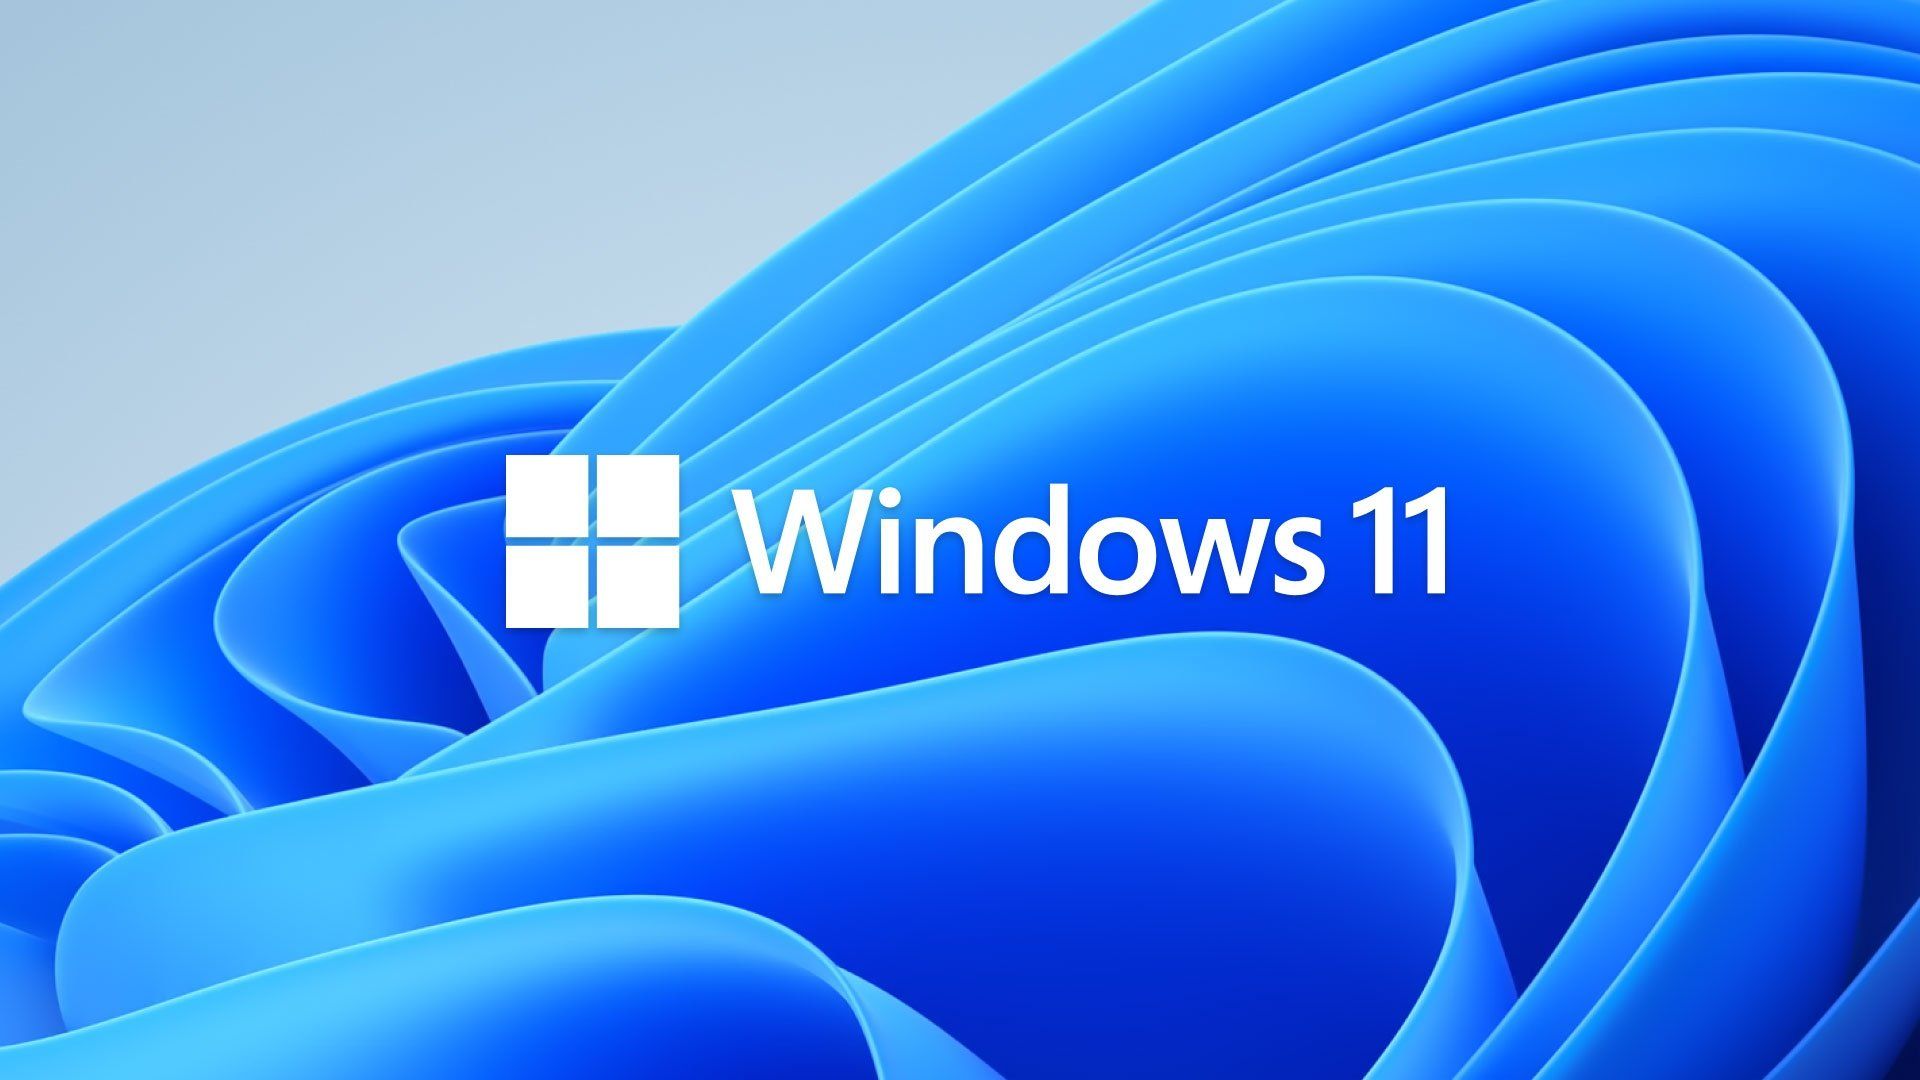  Windows Hintergrundbild 1920x1080. Windows 11: Erste Vorschau Der Neuen Sticker Für Den Desktop Hintergrund Geleakt